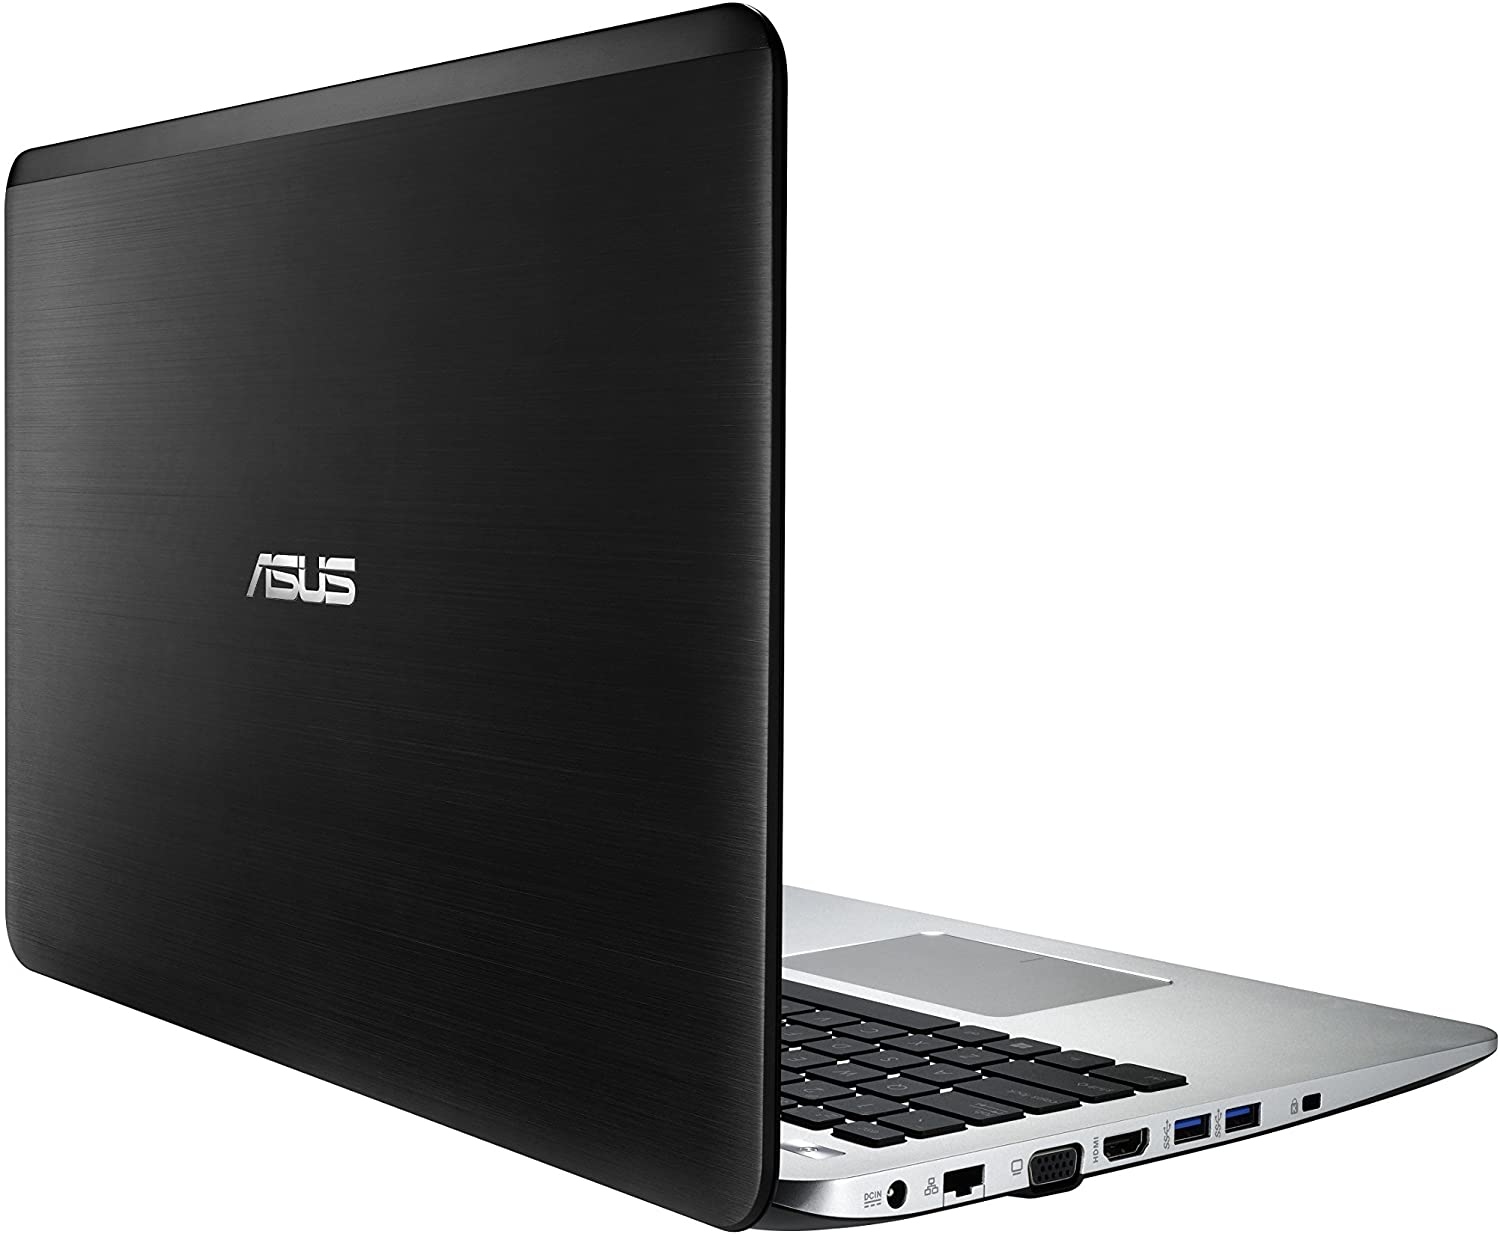 Nâng cấp SSD, RAM, Caddy bay cho Laptop Asus F555L ...